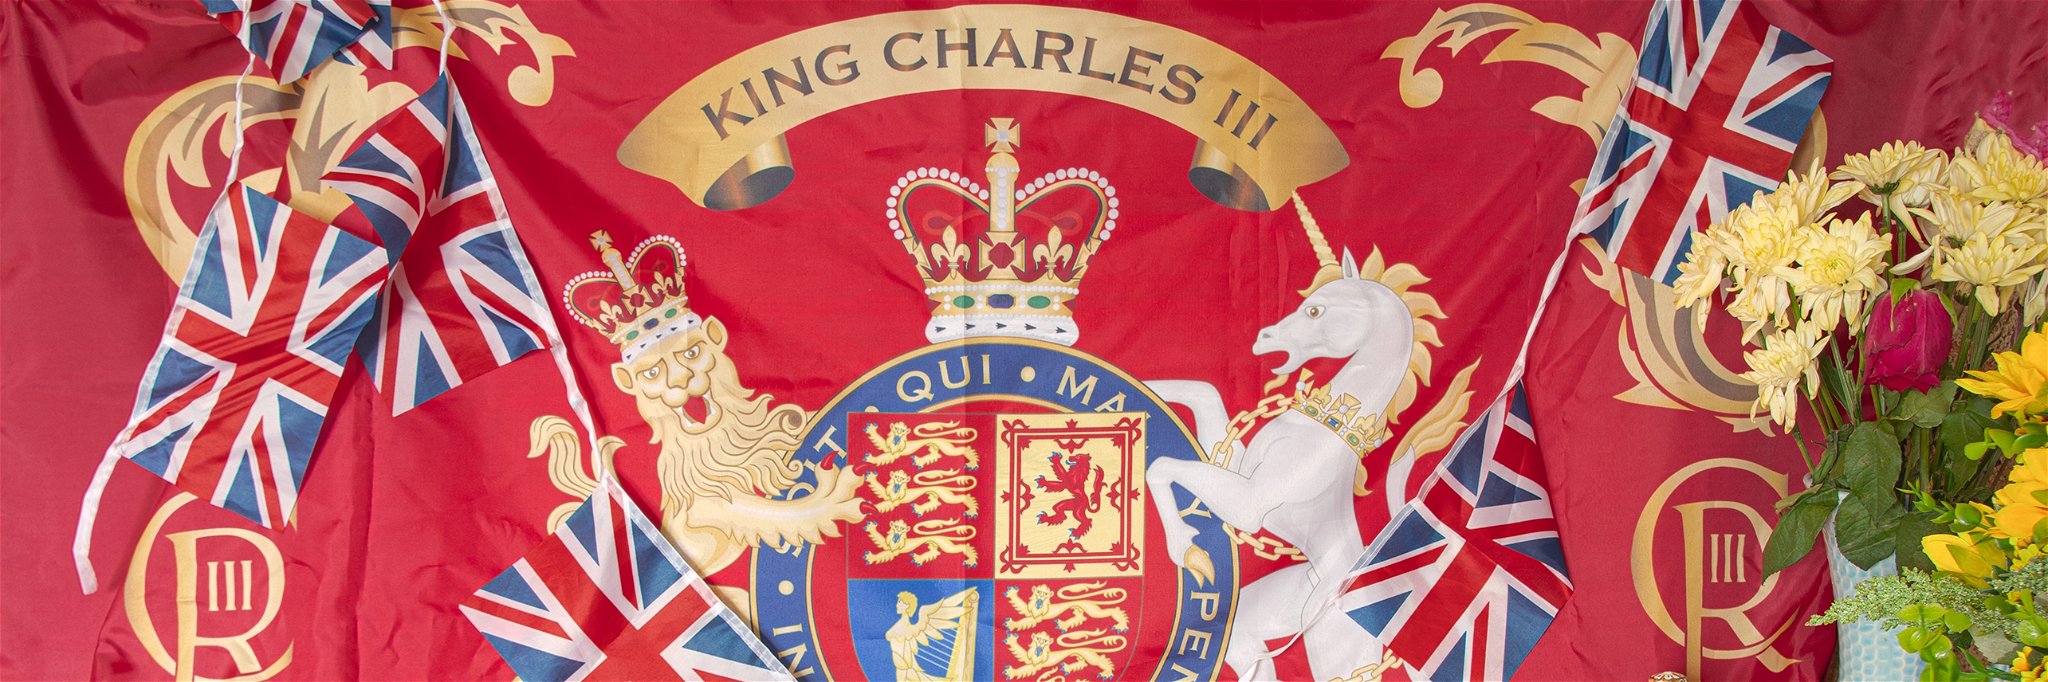 Coronation of King Charles III on May 6